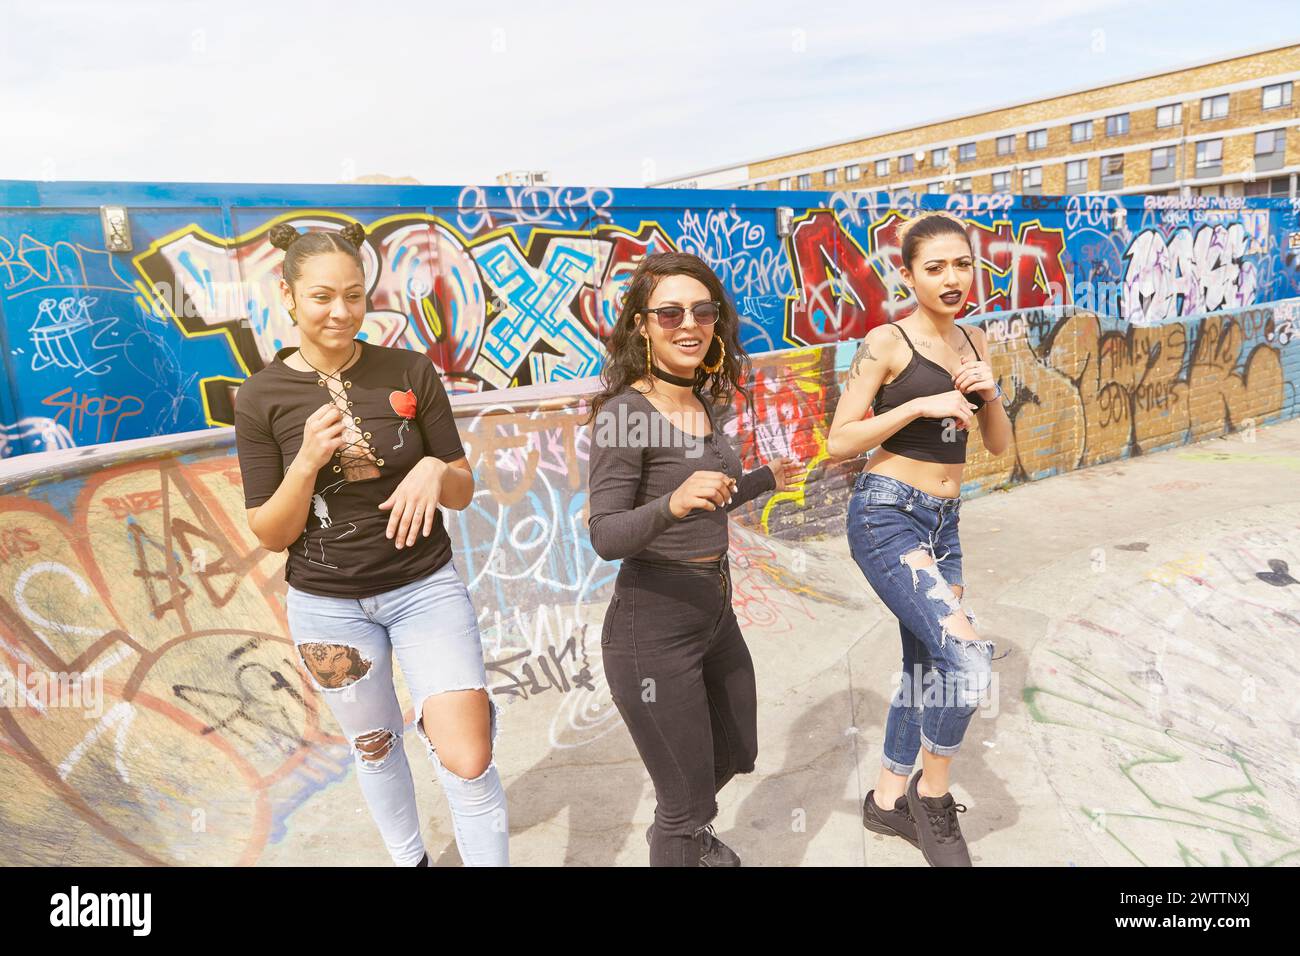 Drei Frauen posieren vor einer Graffiti-Wand Stockfoto